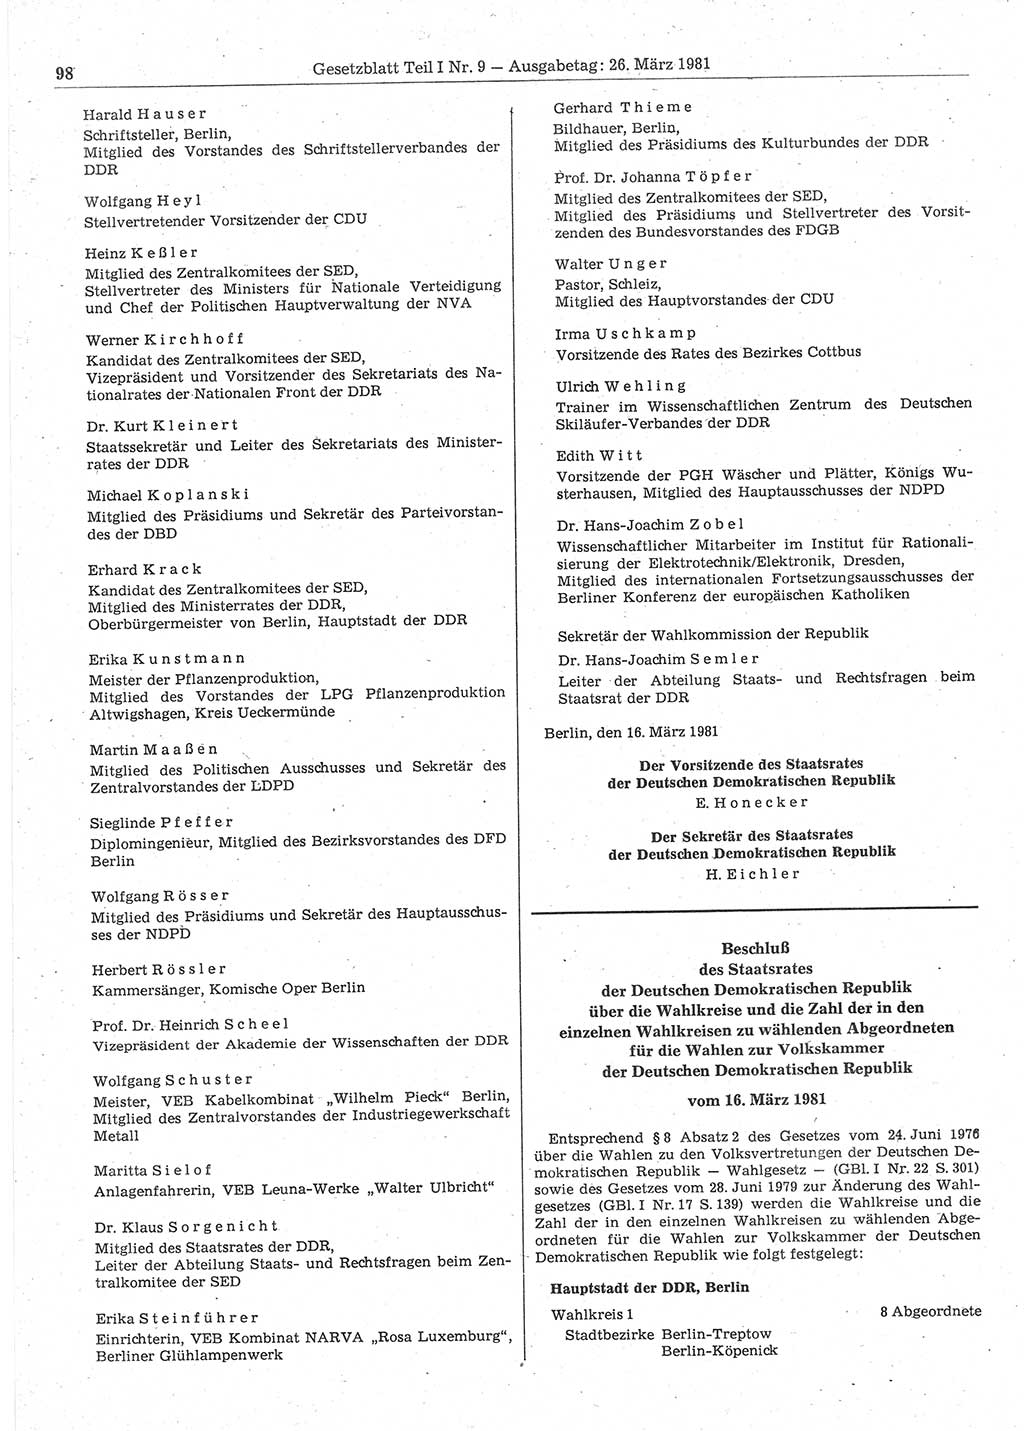 Gesetzblatt (GBl.) der Deutschen Demokratischen Republik (DDR) Teil Ⅰ 1981, Seite 98 (GBl. DDR Ⅰ 1981, S. 98)